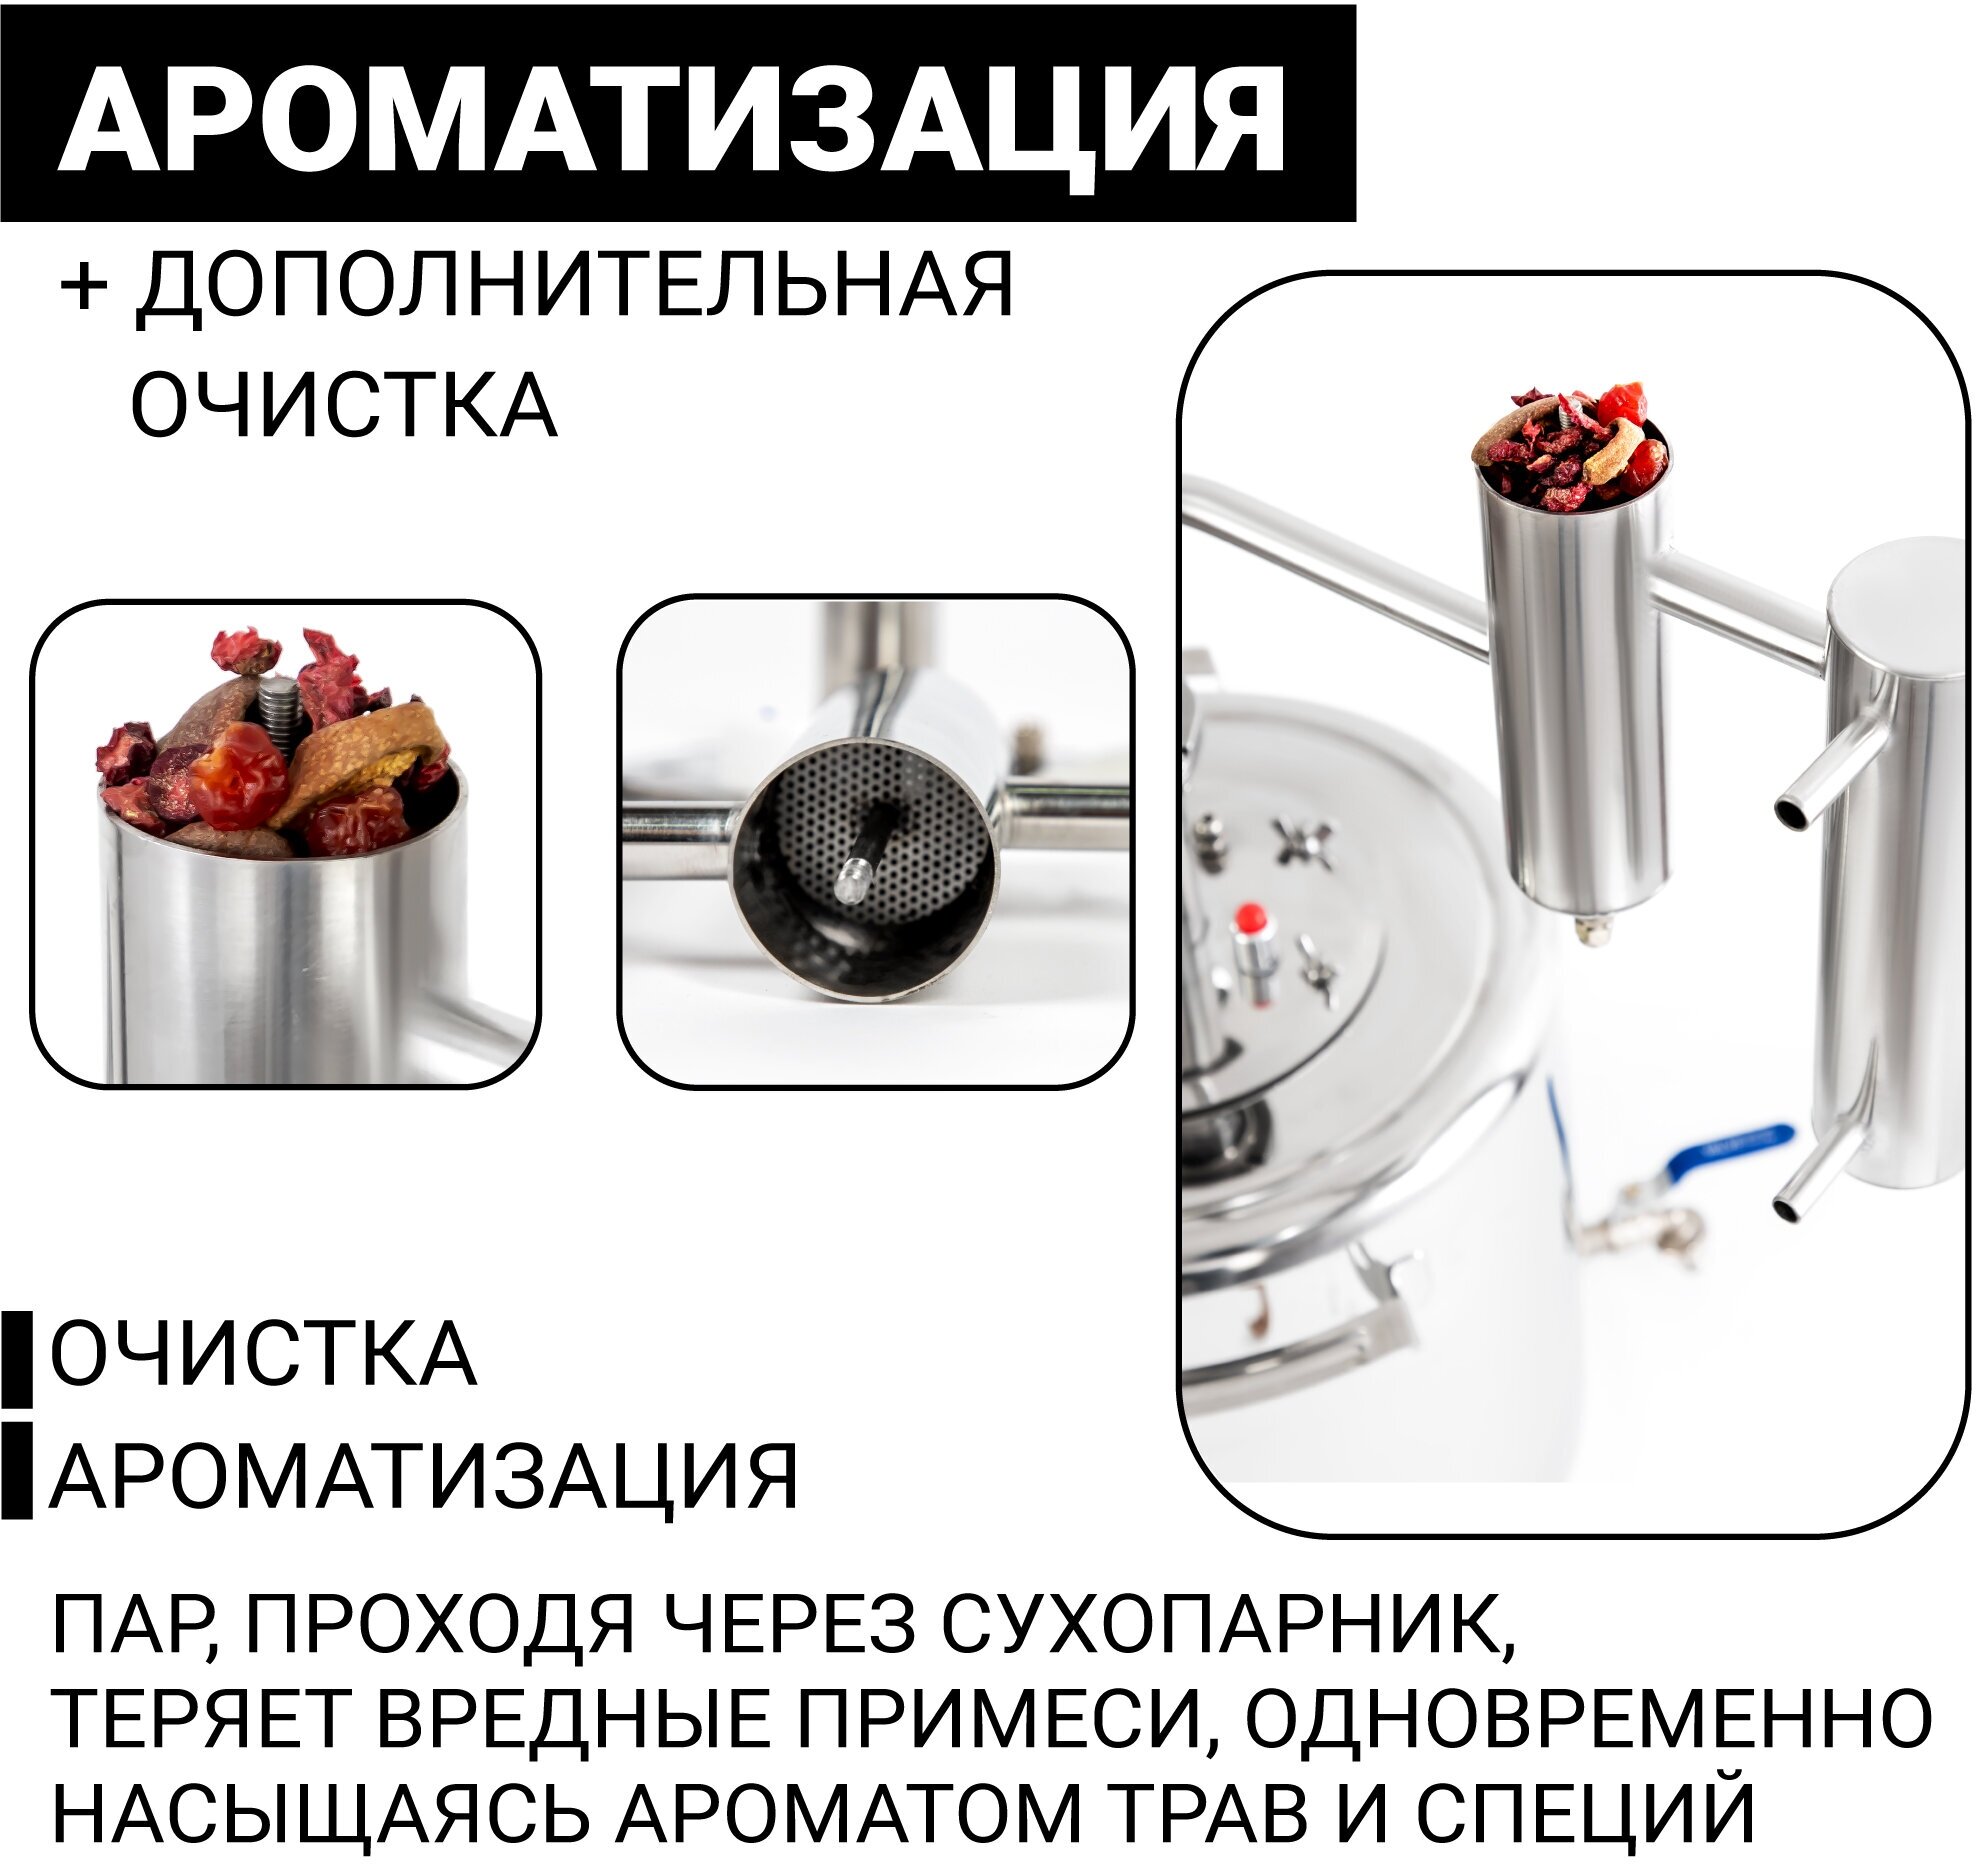 Самогонный аппарат "Будённый" 20 литров, дистиллятор с сухопарником